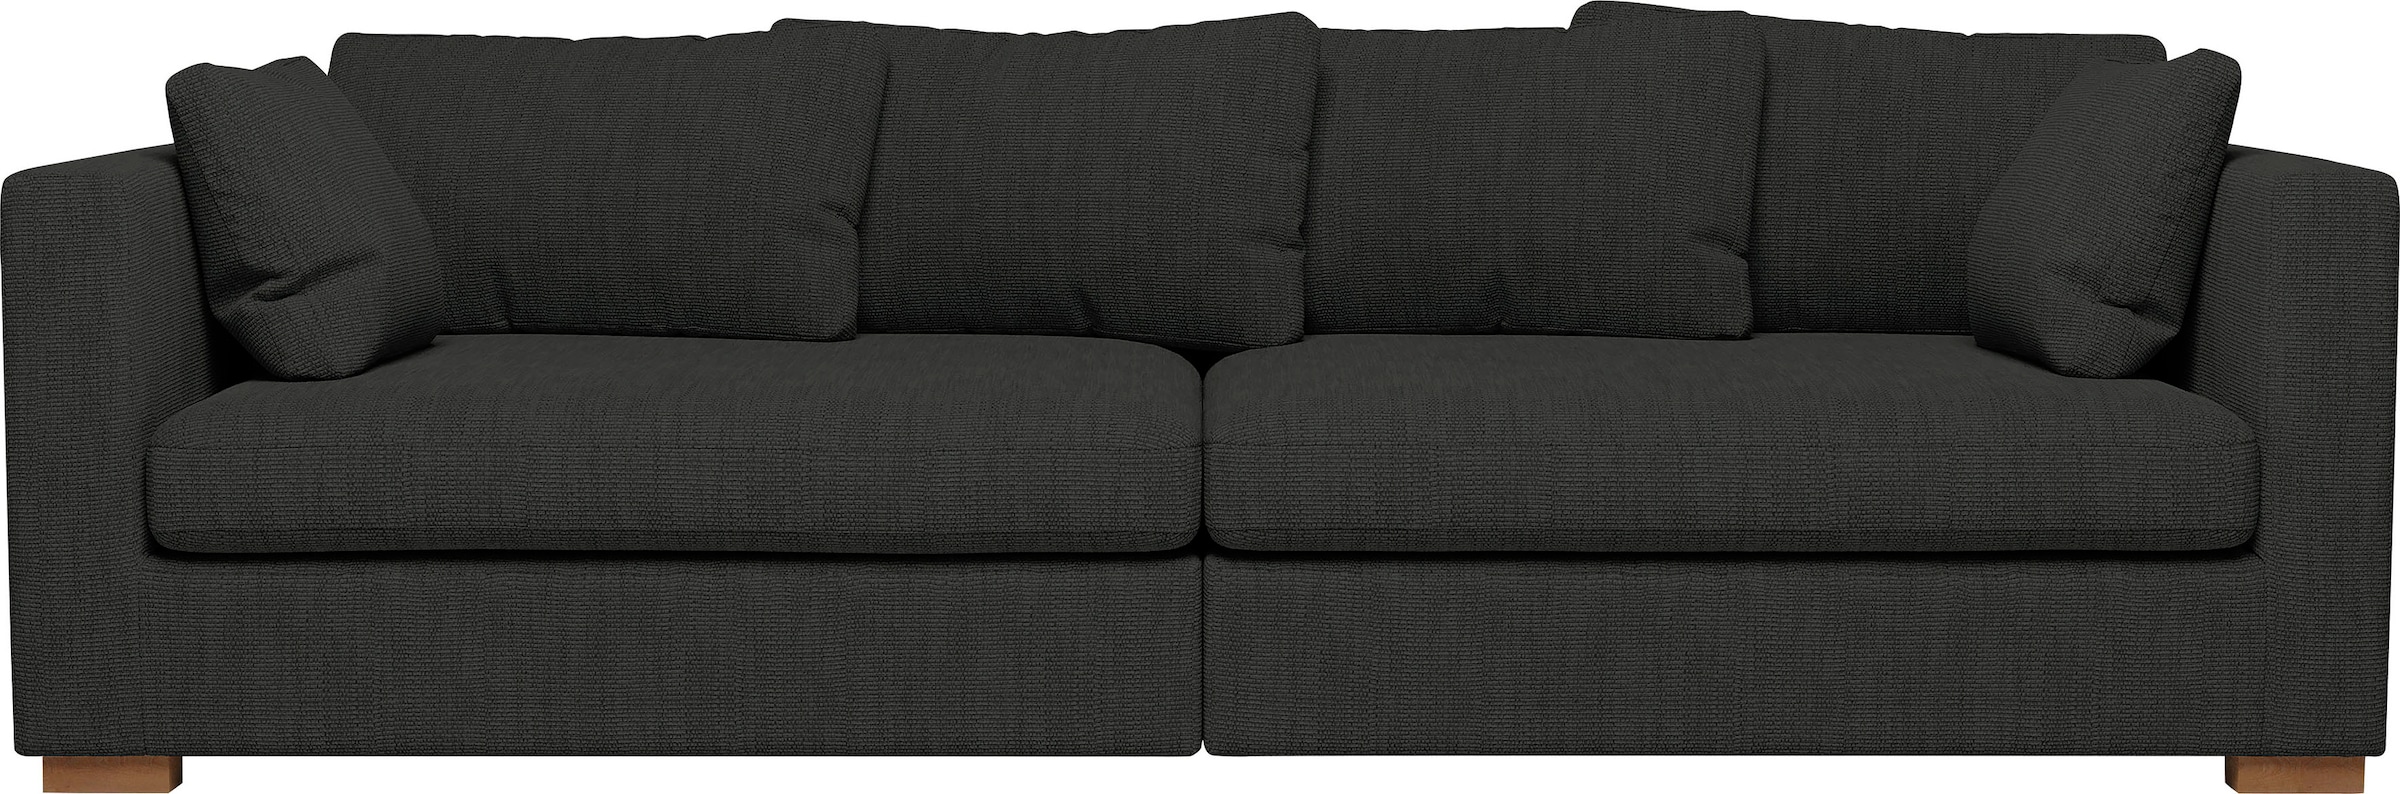 Big-Sofa »Arles«, extra tiefe Sitzfläche, in diversen Stoffqualitäten